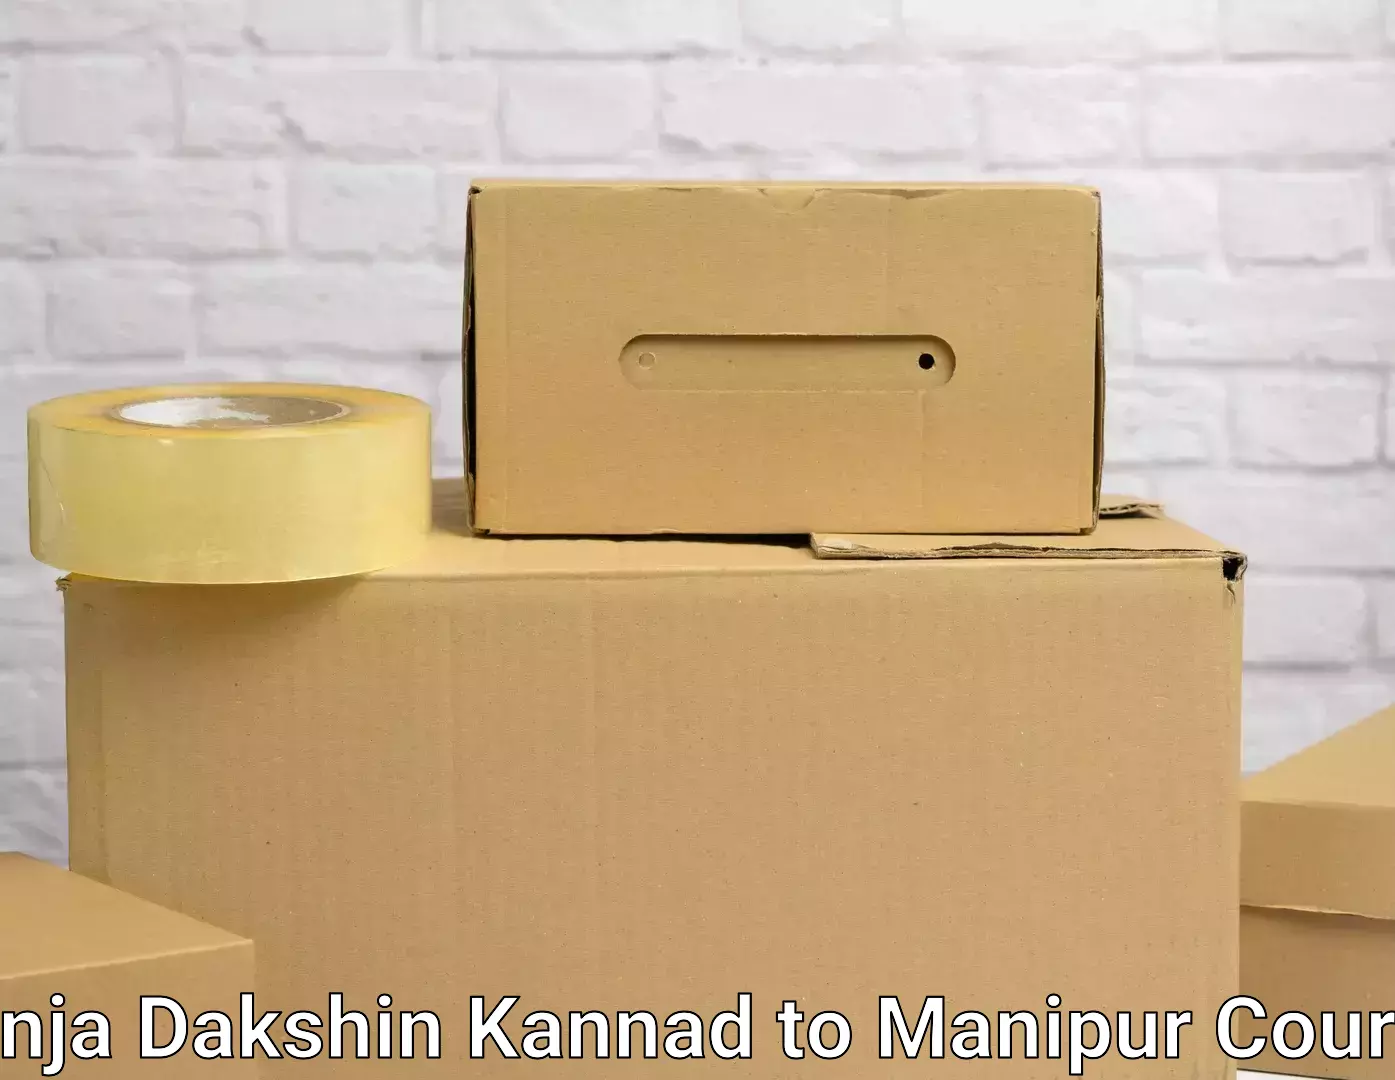 Furniture transport experts Panja Dakshin Kannad to Kakching